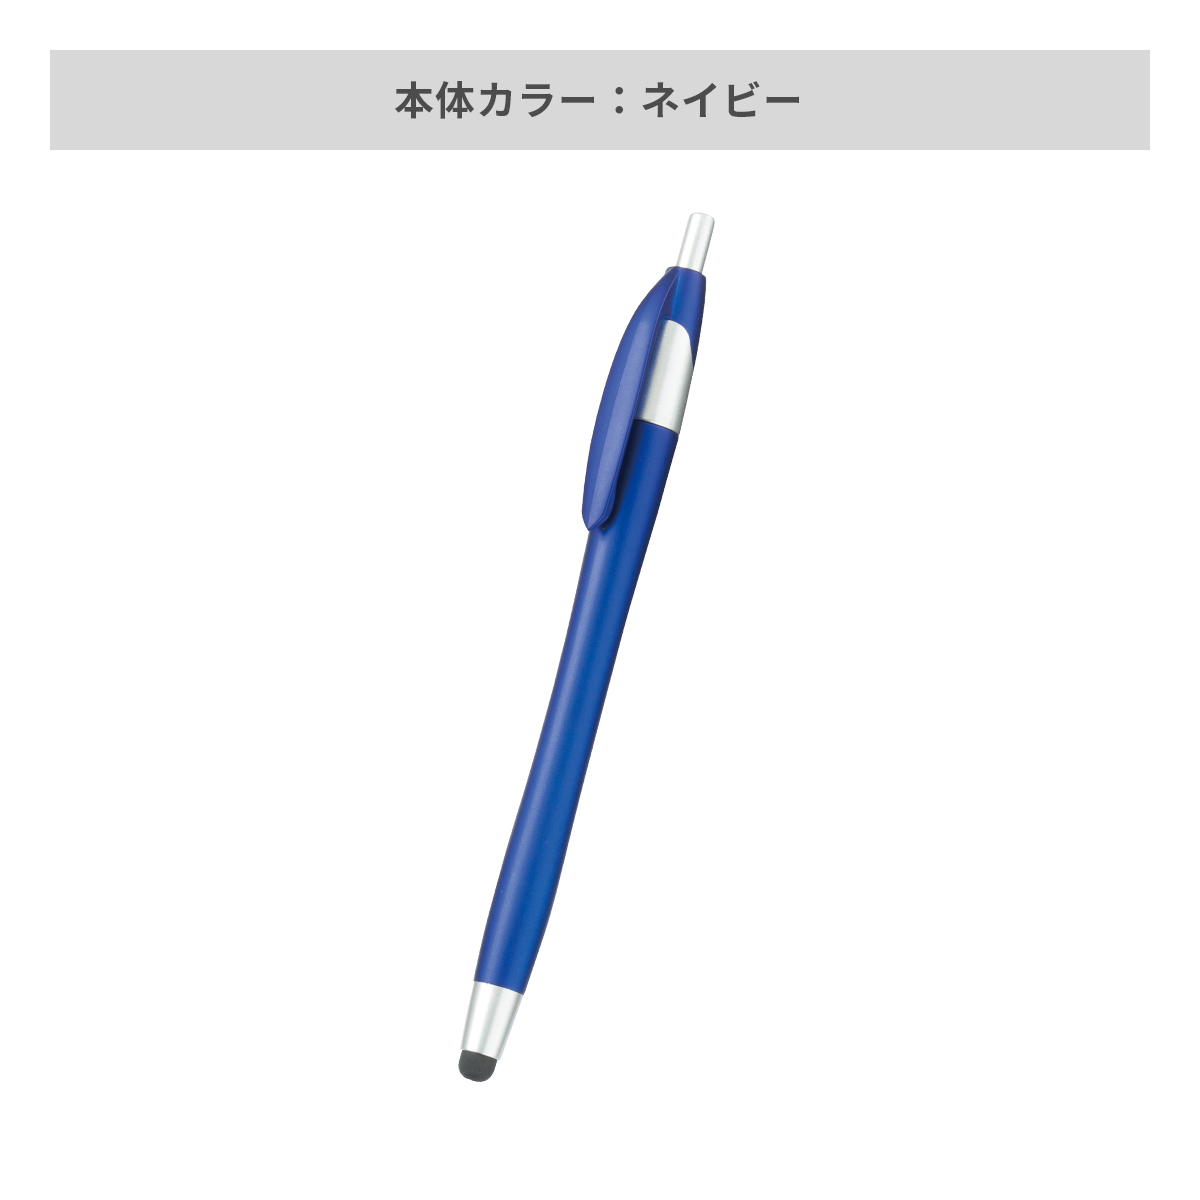 デュアルライトタッチペン【多機能ペン / パッド印刷】 画像5